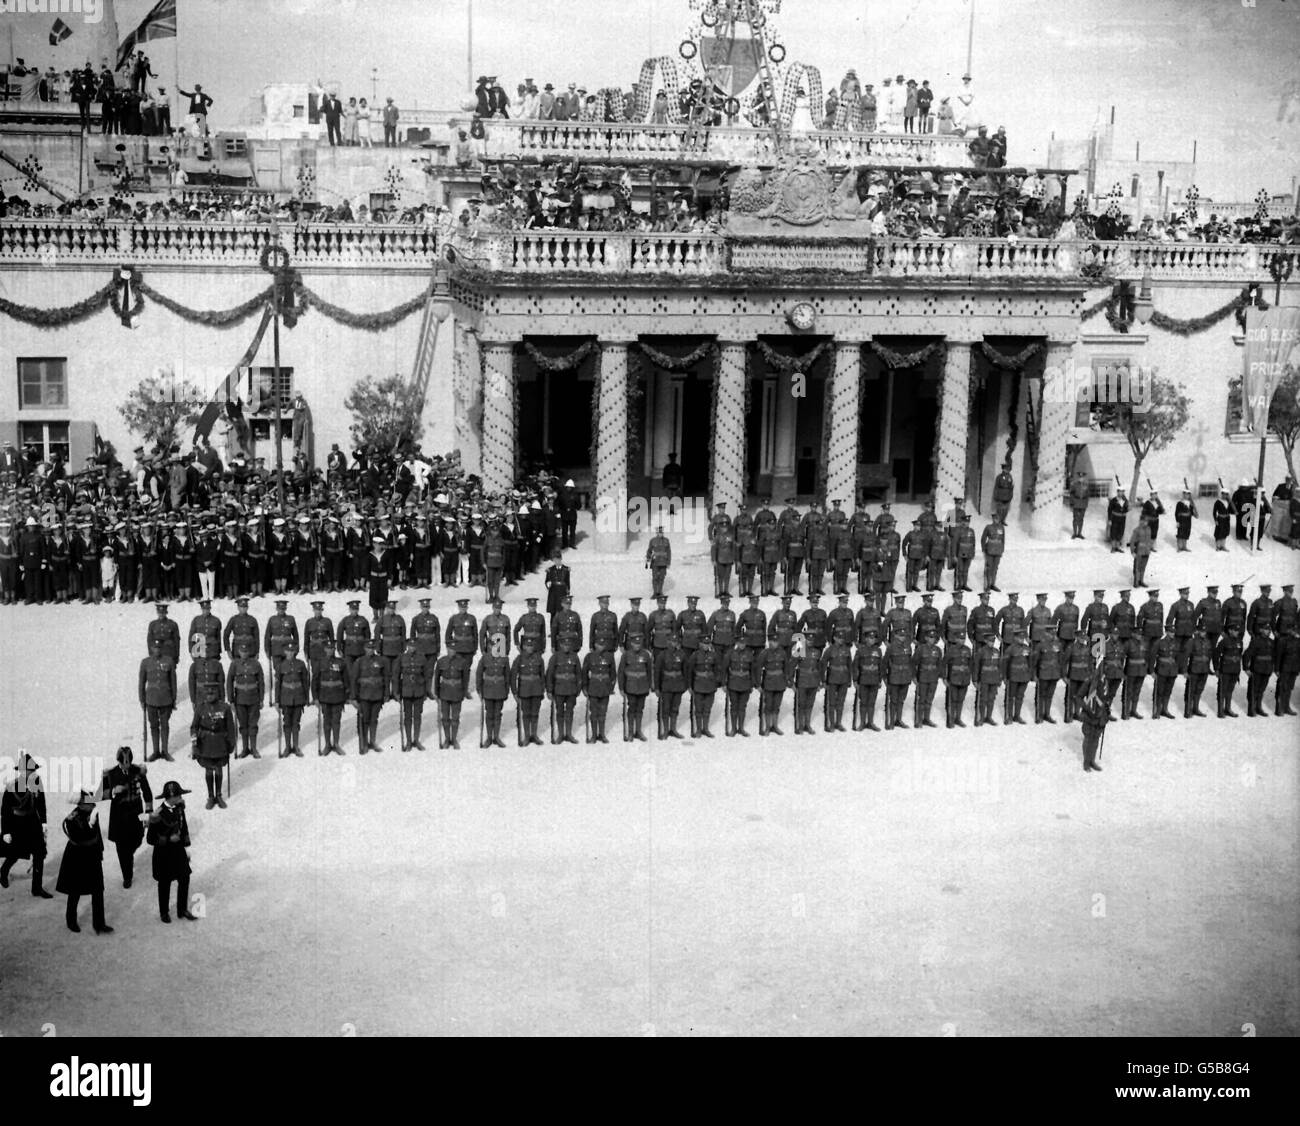 REGIMIENTO DE ESSEX EN MALTA 1921: El Príncipe de Gales (más tarde el Rey Eduardo VIII y el Duque de Windsor) visita la isla mediterránea y la base naval británica de Malta. Aquí el Príncipe, en la parte inferior izquierda, inspecciona una Guardia de Honor del Regimiento de Essex en la Plaza del Palacio. Foto de stock